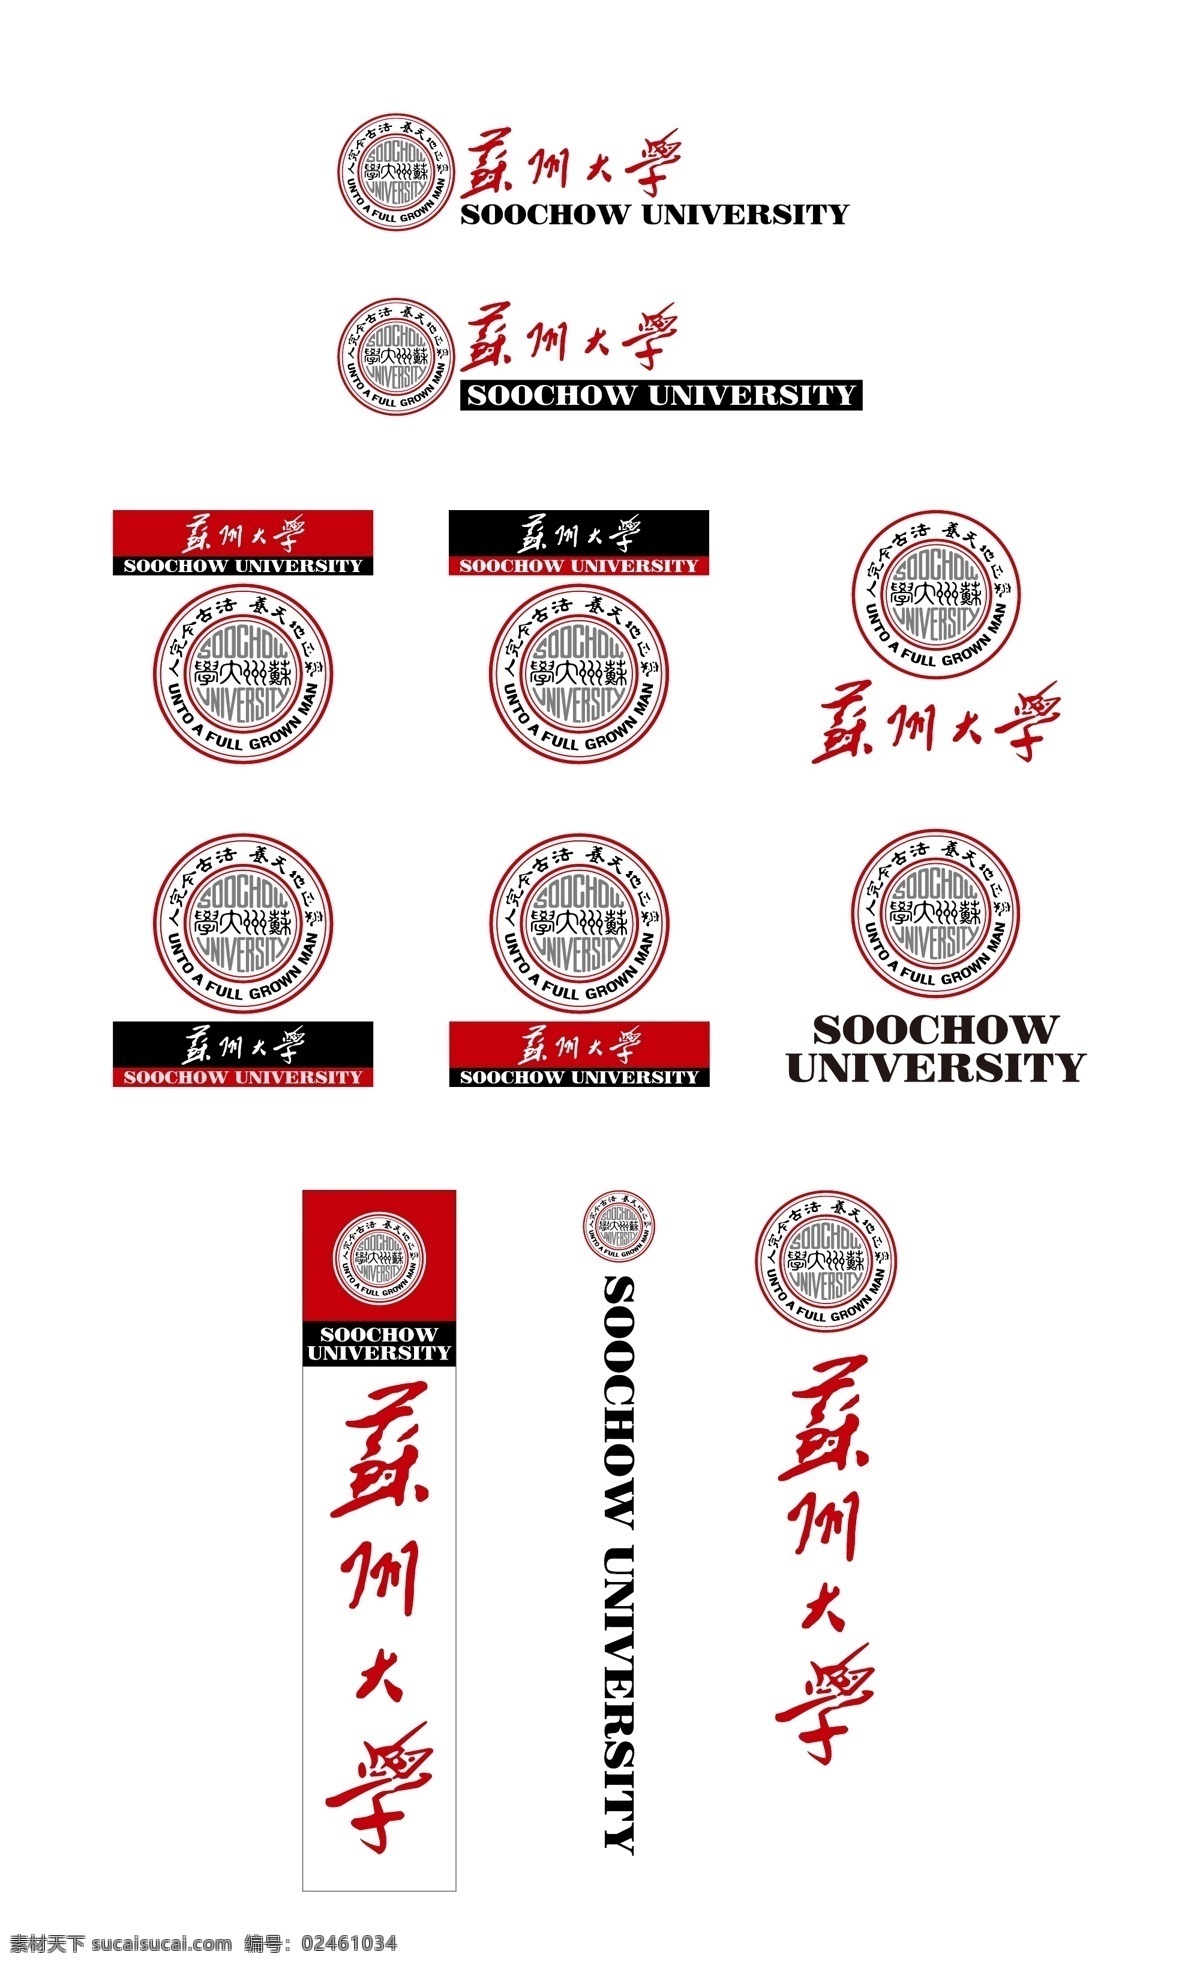 苏州大学 校徽 新版 苏大 徽志 徽标 标识 标志 logo 重要高校校徽 标志图标 其他图标